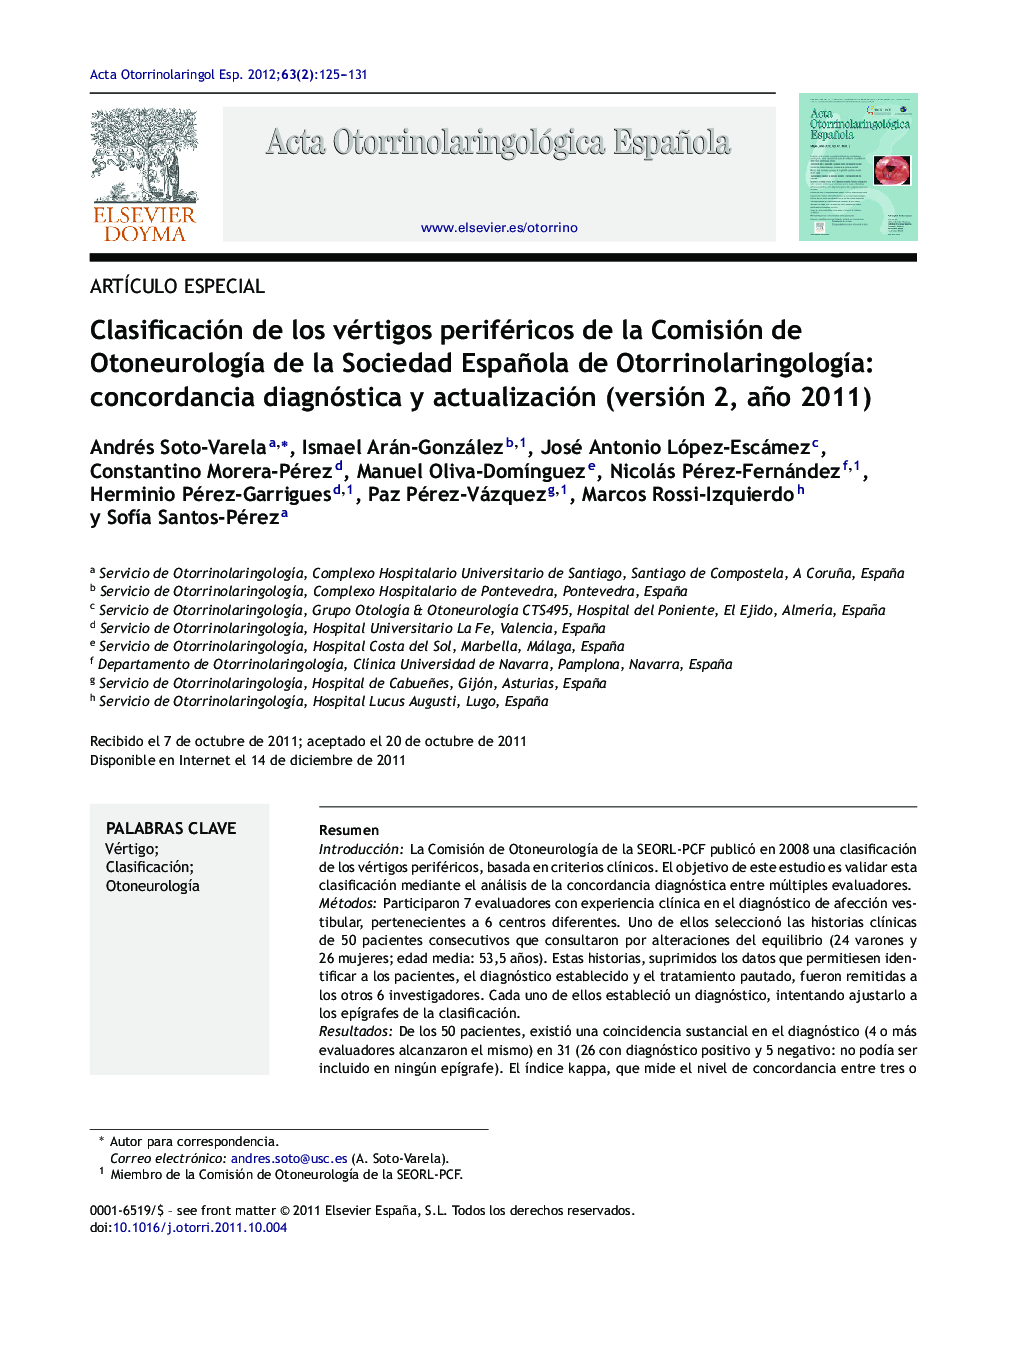 Clasificación de los vértigos periféricos de la Comisión de Otoneurología de la Sociedad Española de Otorrinolaringología: concordancia diagnóstica y actualización (versión 2, año 2011)